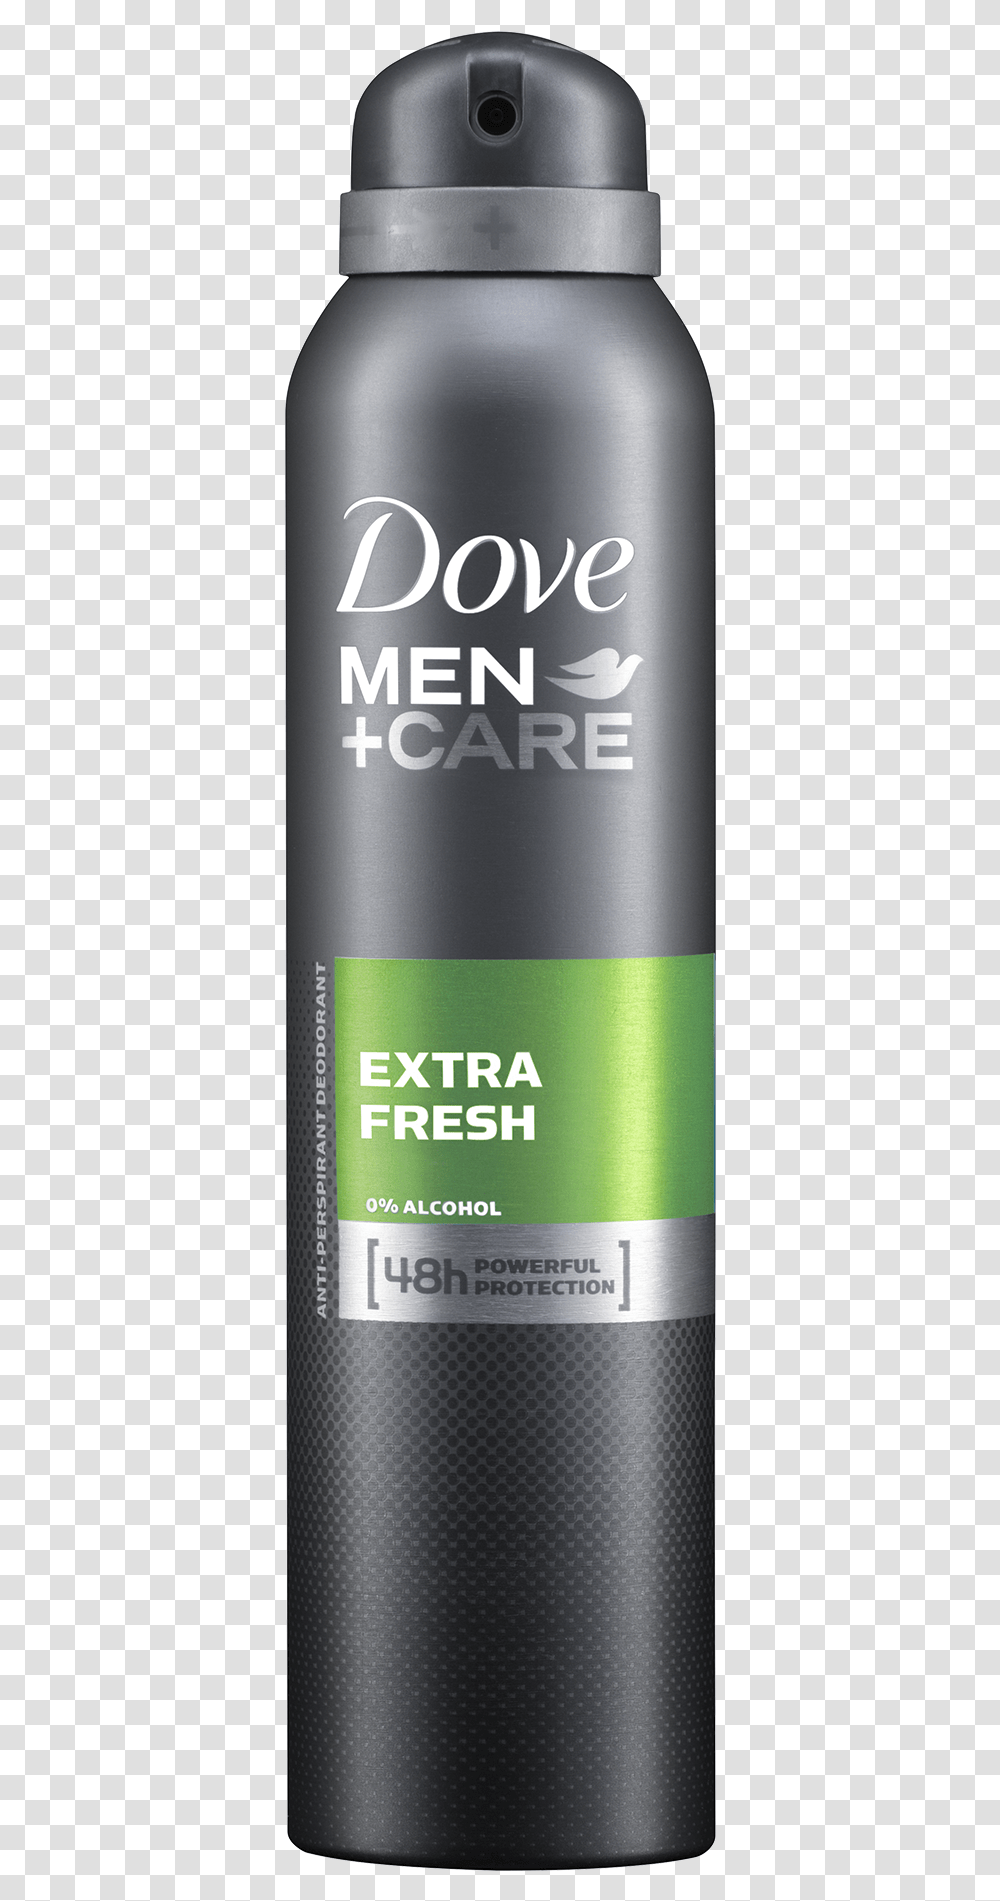 Deodorant Pic Dove Men Care Cream Comfort, Aluminium, Tin, Can, Spray Can Transparent Png